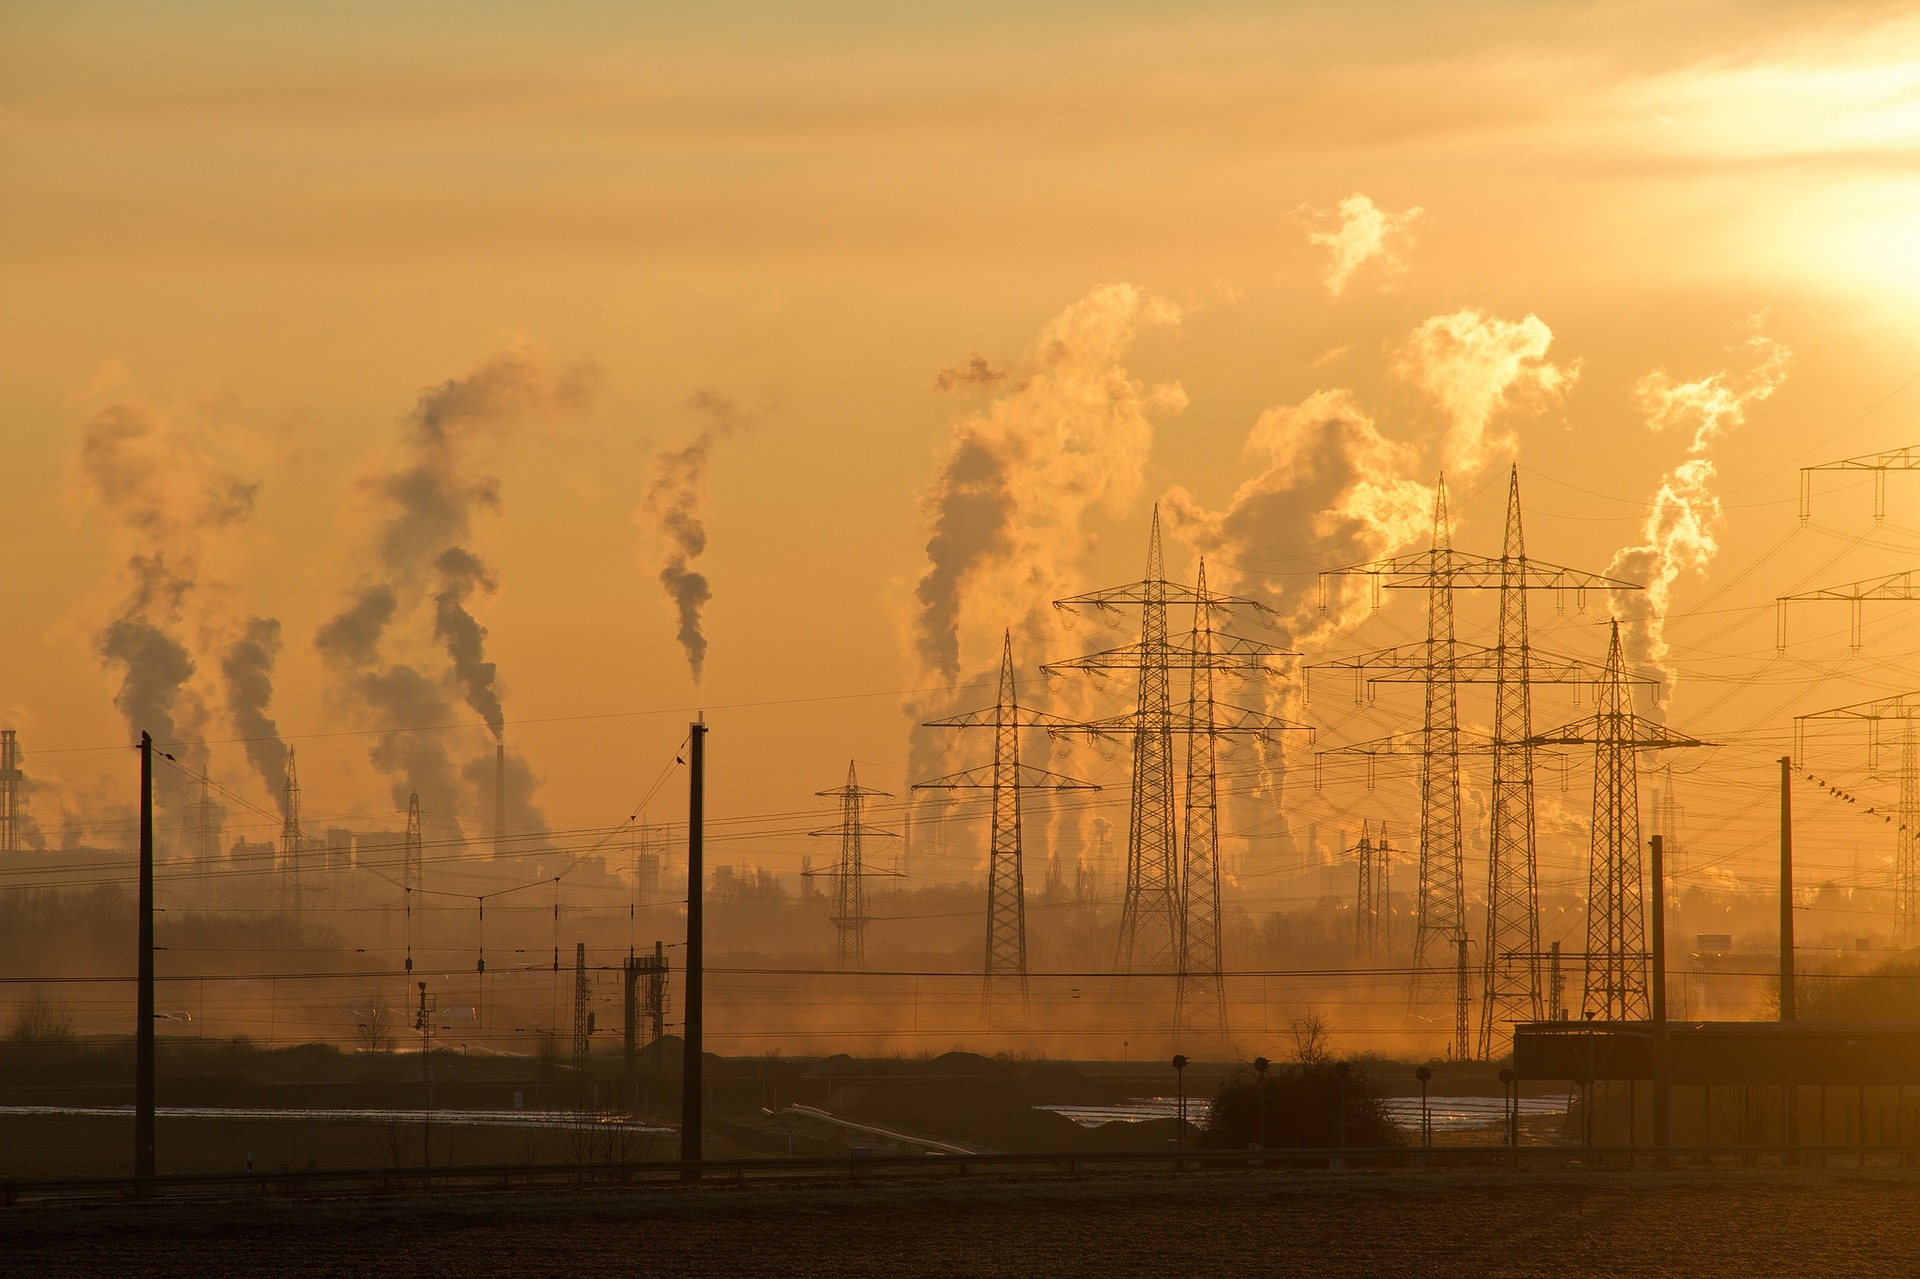 Emisiones de Gases de Efecto Invernadero. ¿Por que es tan urgente reducirlas?